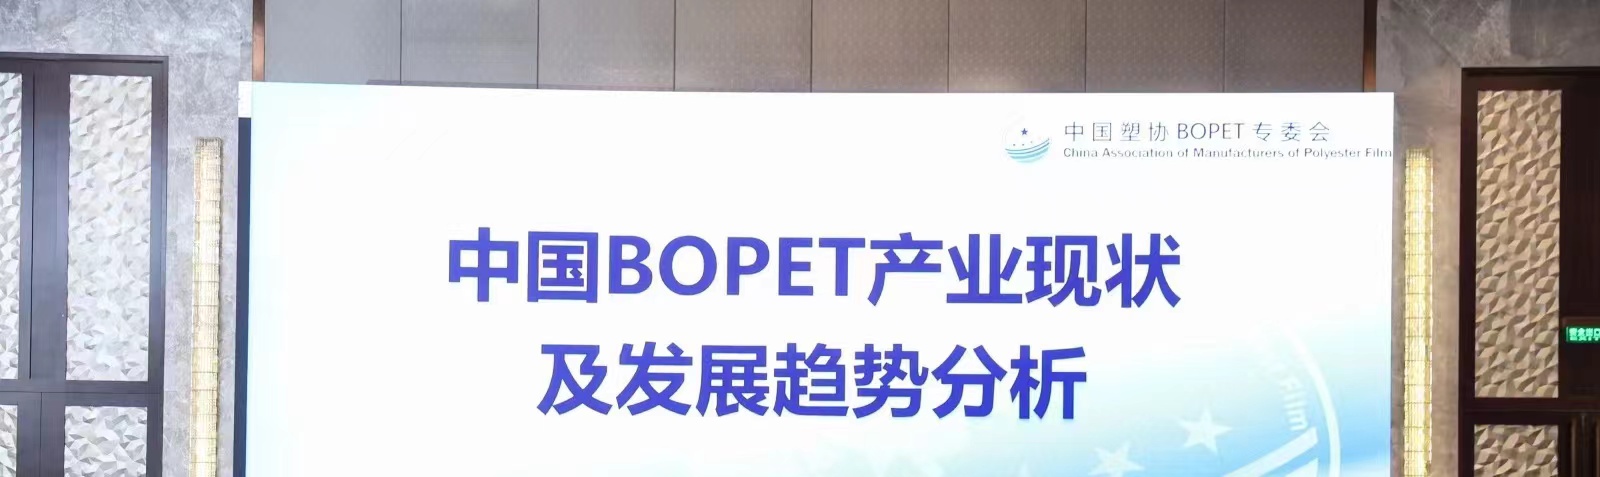 중국 BOPET 산업의 현황 및 발전 추세에 관한 회의